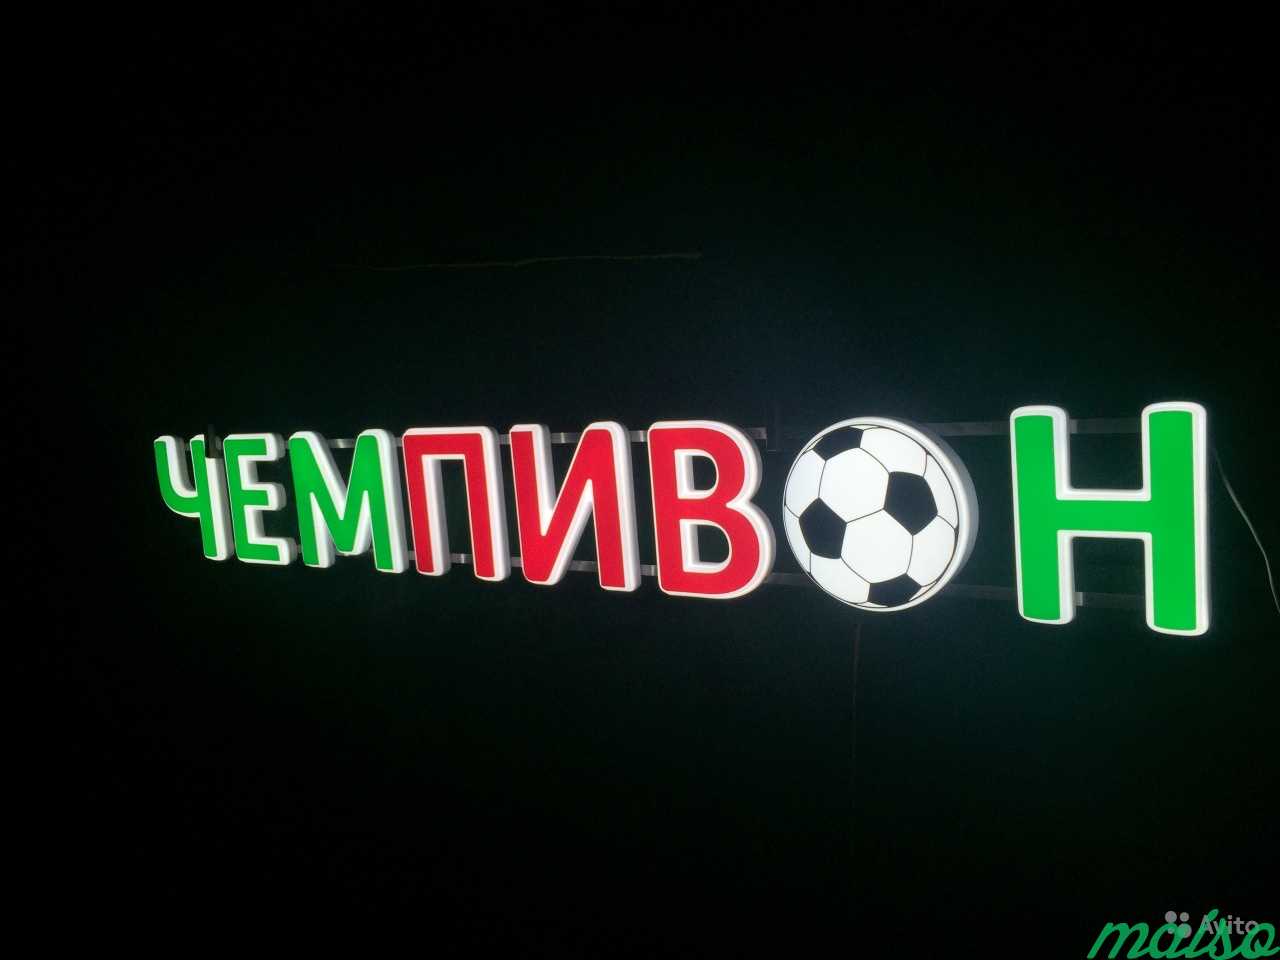 Вывеска объемные буквы чемпивон в Москве. Фото 3